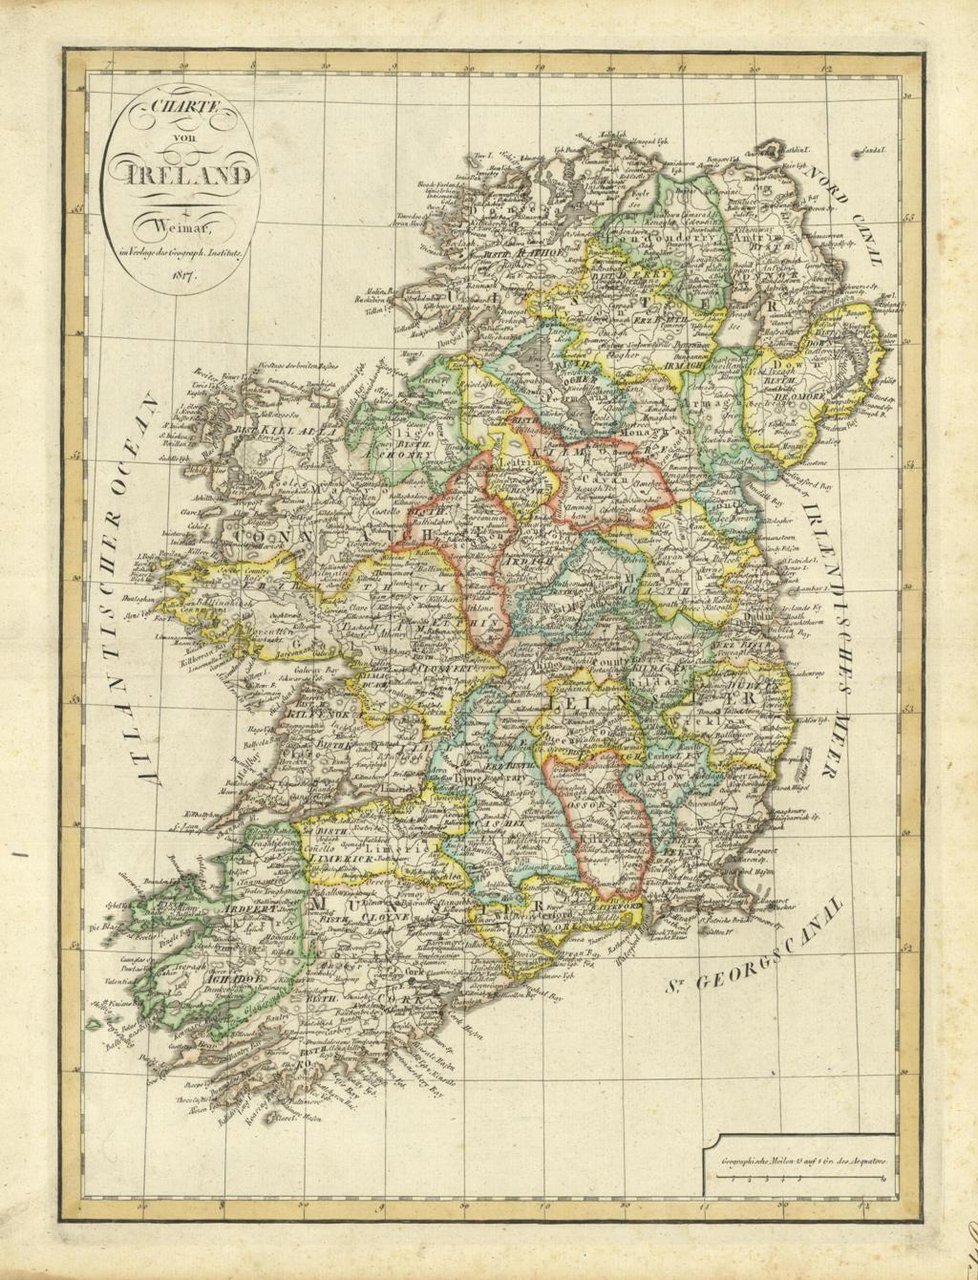 Charte von Ireland